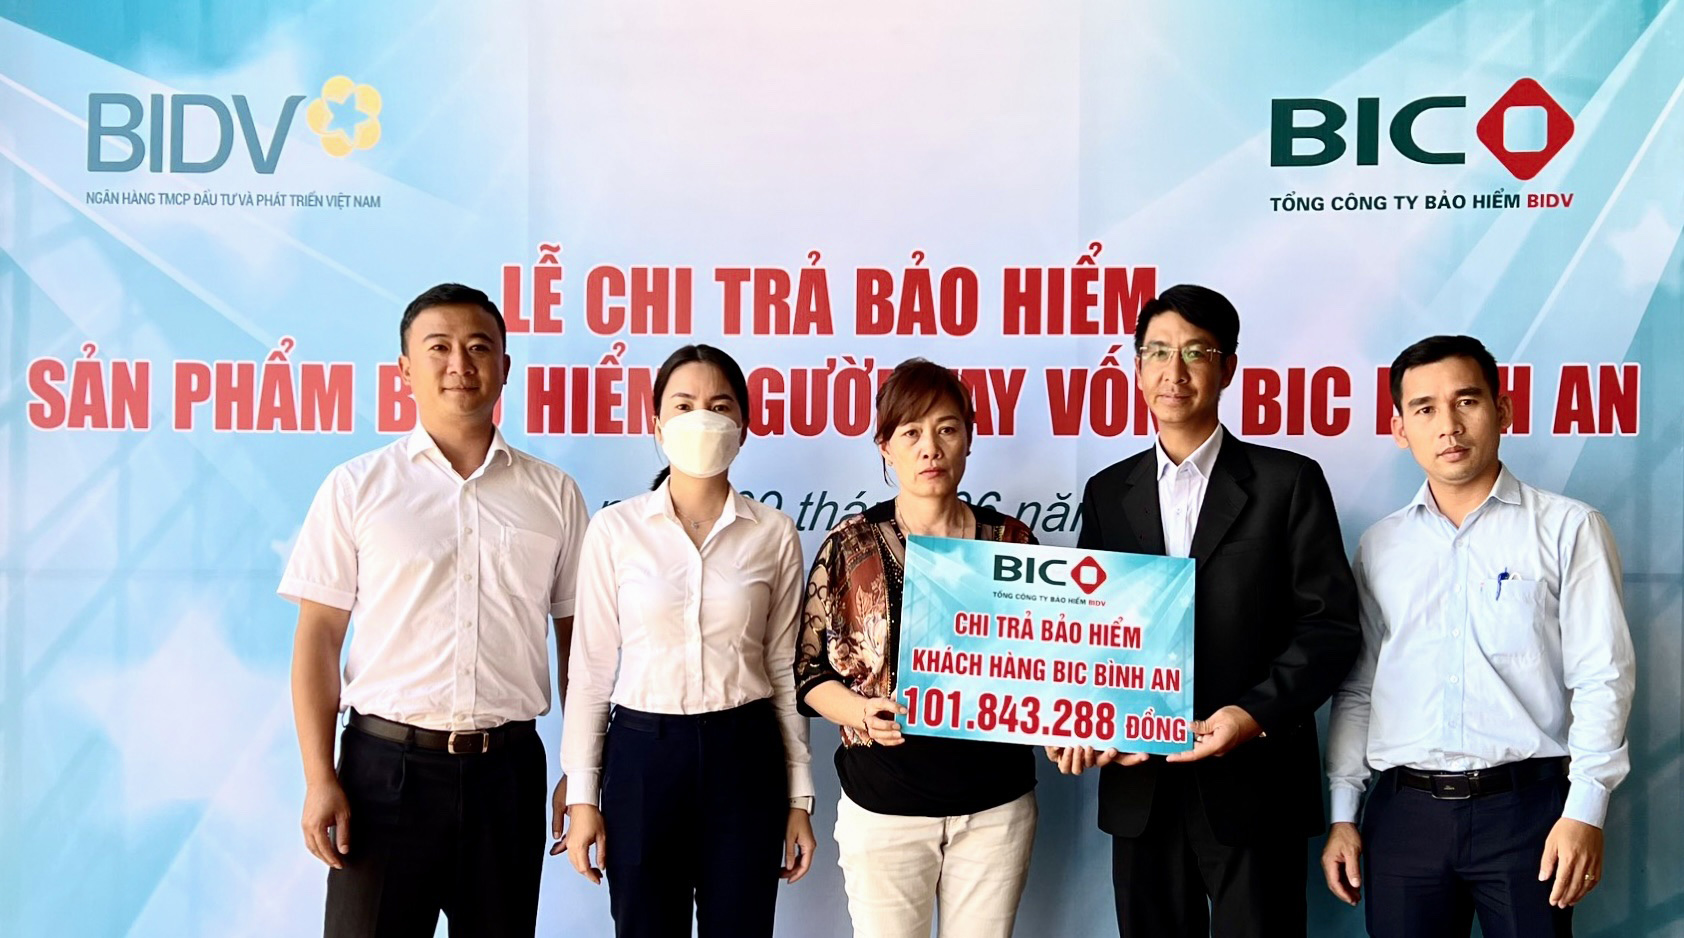 Đại diện lãnh đạo BIC Lâm Đồng và Chi nhánh BIDV Đà Lạt, PGD Tân Hà trao tiền bảo hiểm cho gia đình khách hàng